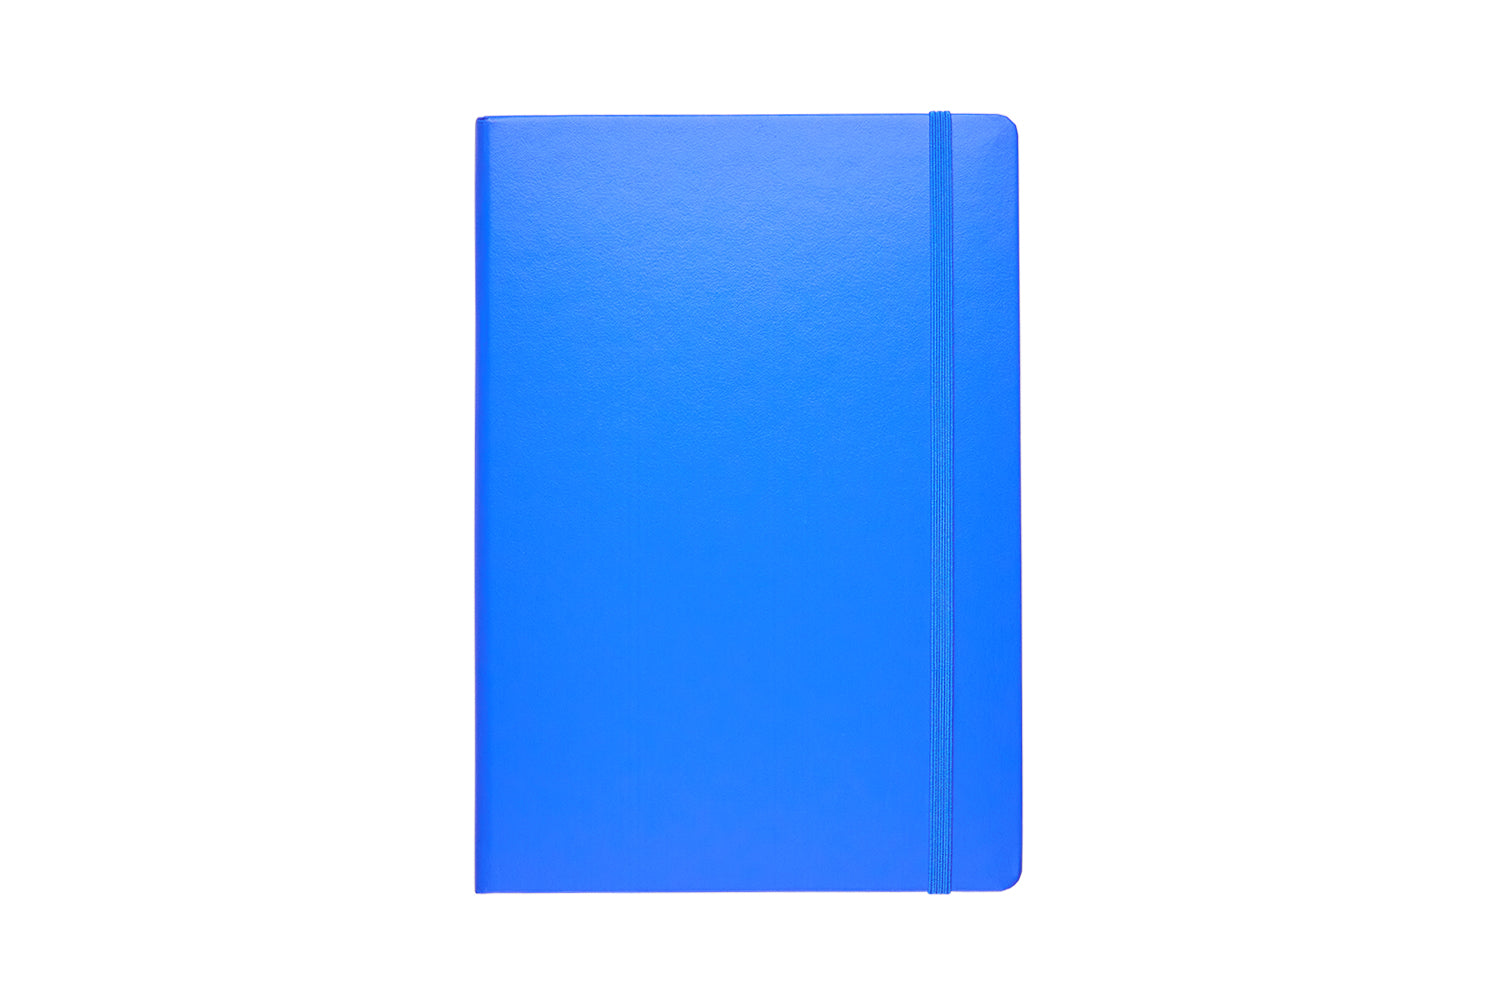 Leuchtturm1917 Notebook A5 Hard Cover, Plain